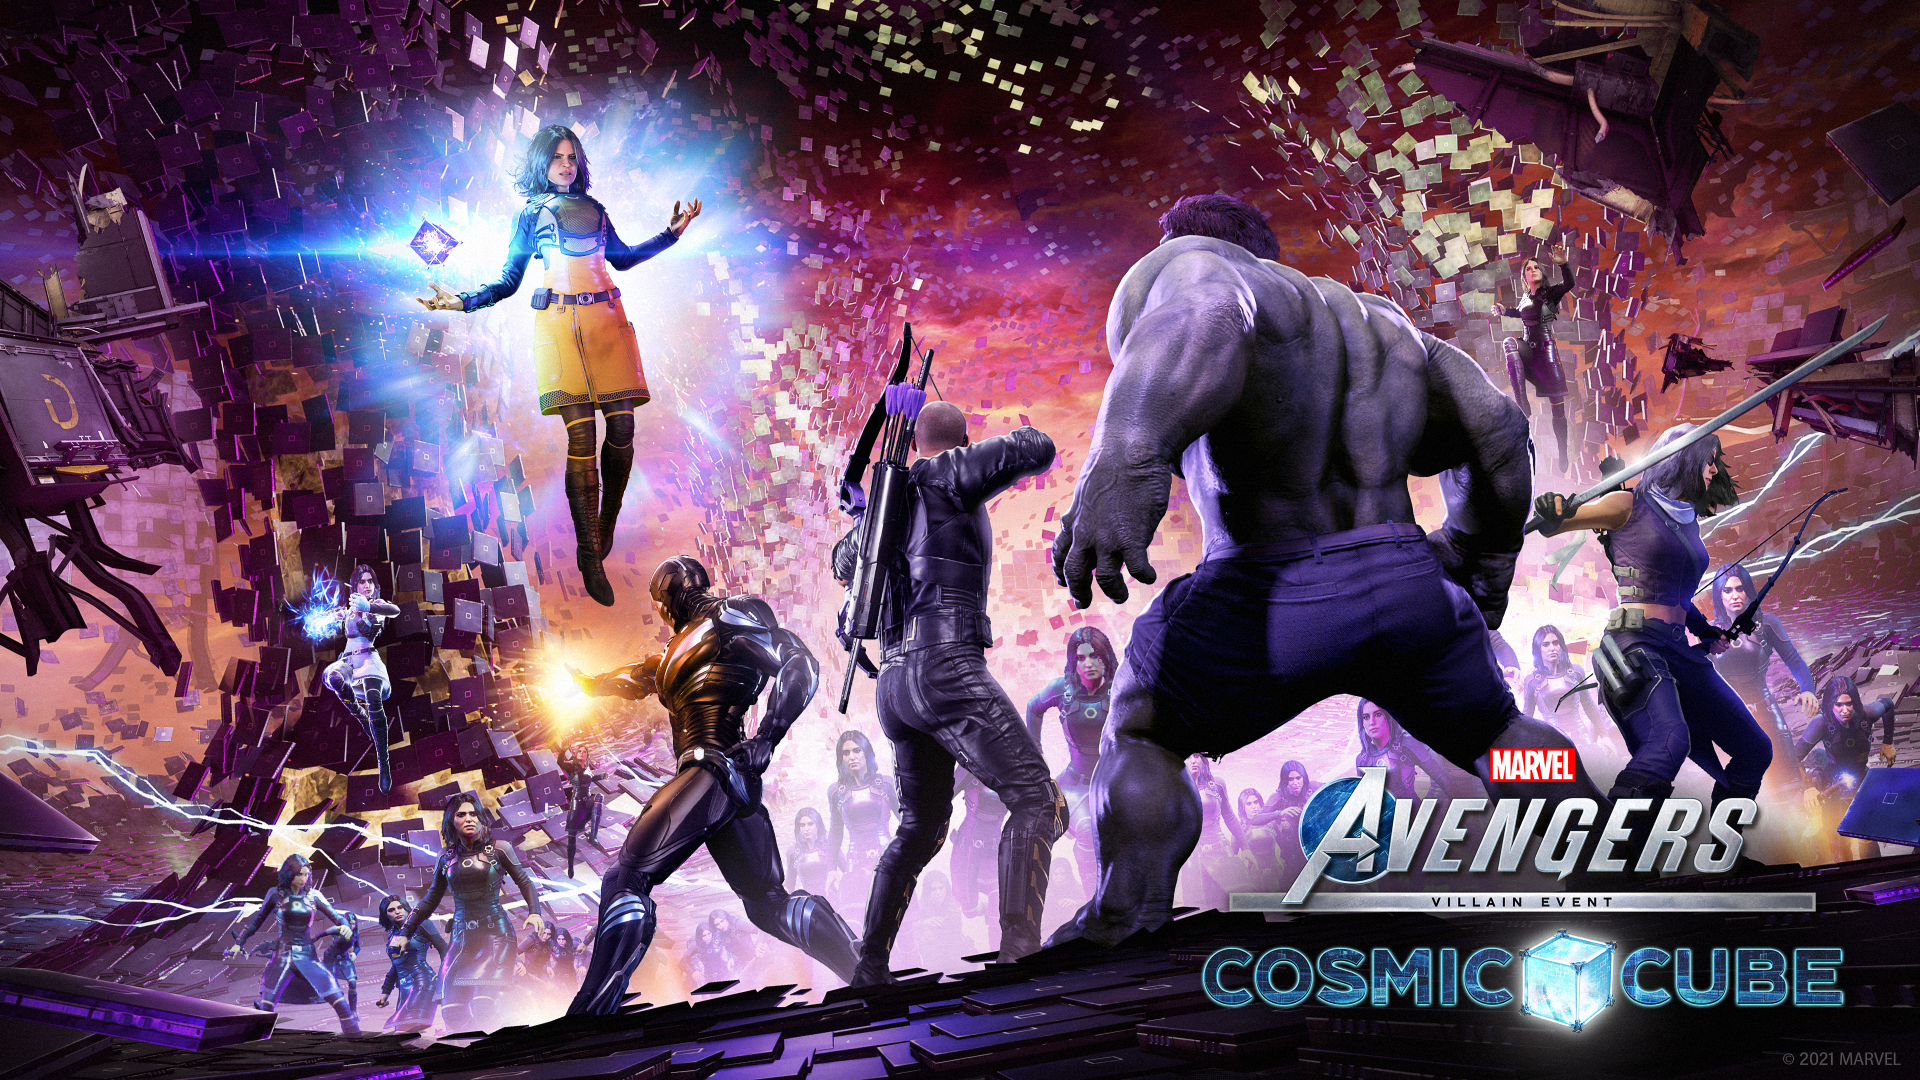 La actualización de Marvel’s Avengers presenta una nueva y poderosa amenaza para los héroes más poderosos de la tierra: The Cosmic Cube